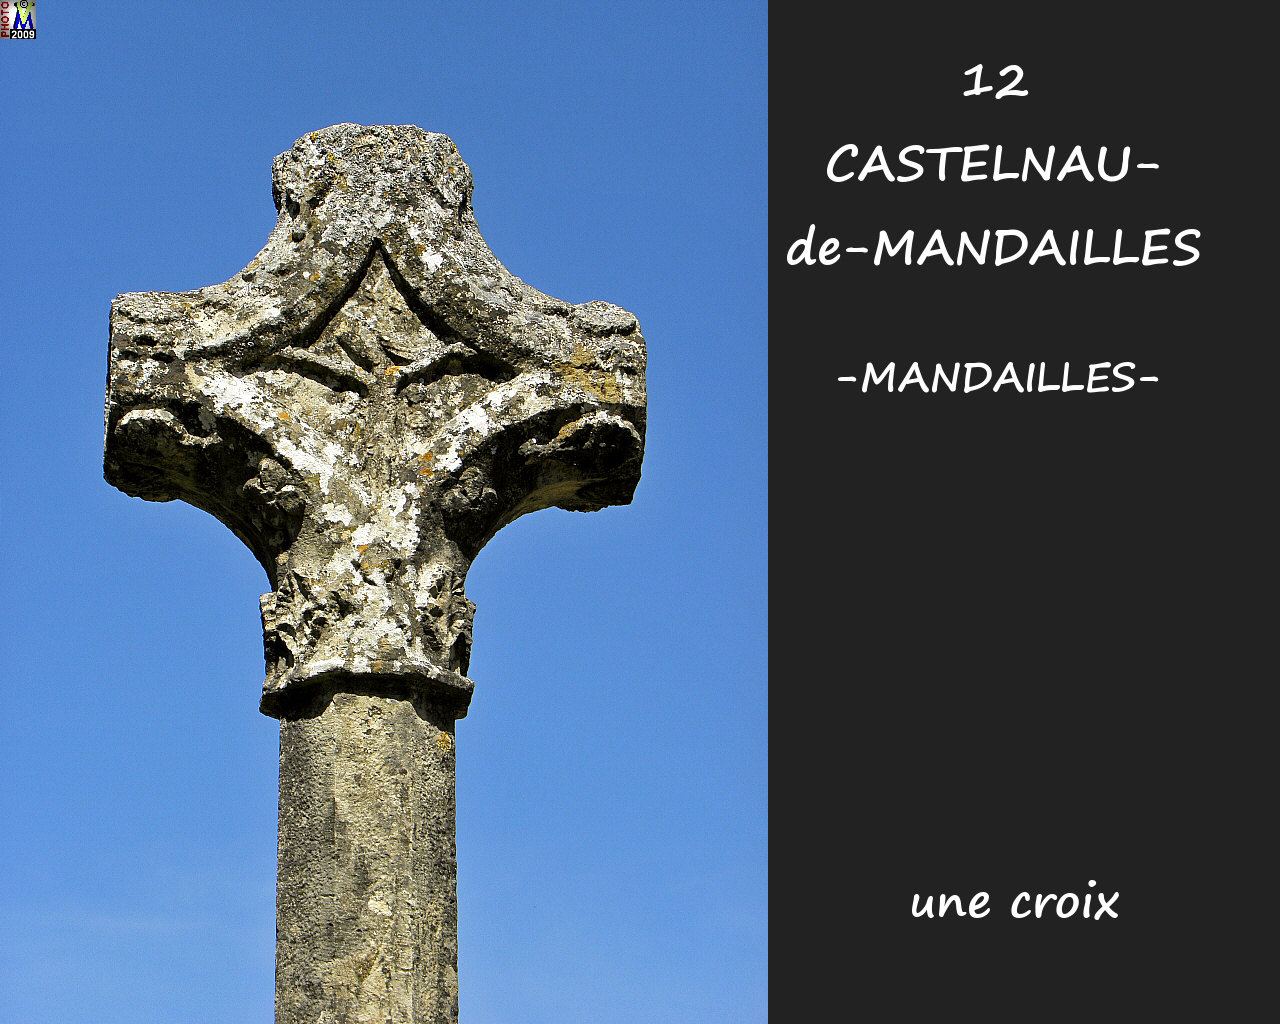 12CASTELNAU-MANDAILLESzMANDAILLES_croix_100.jpg